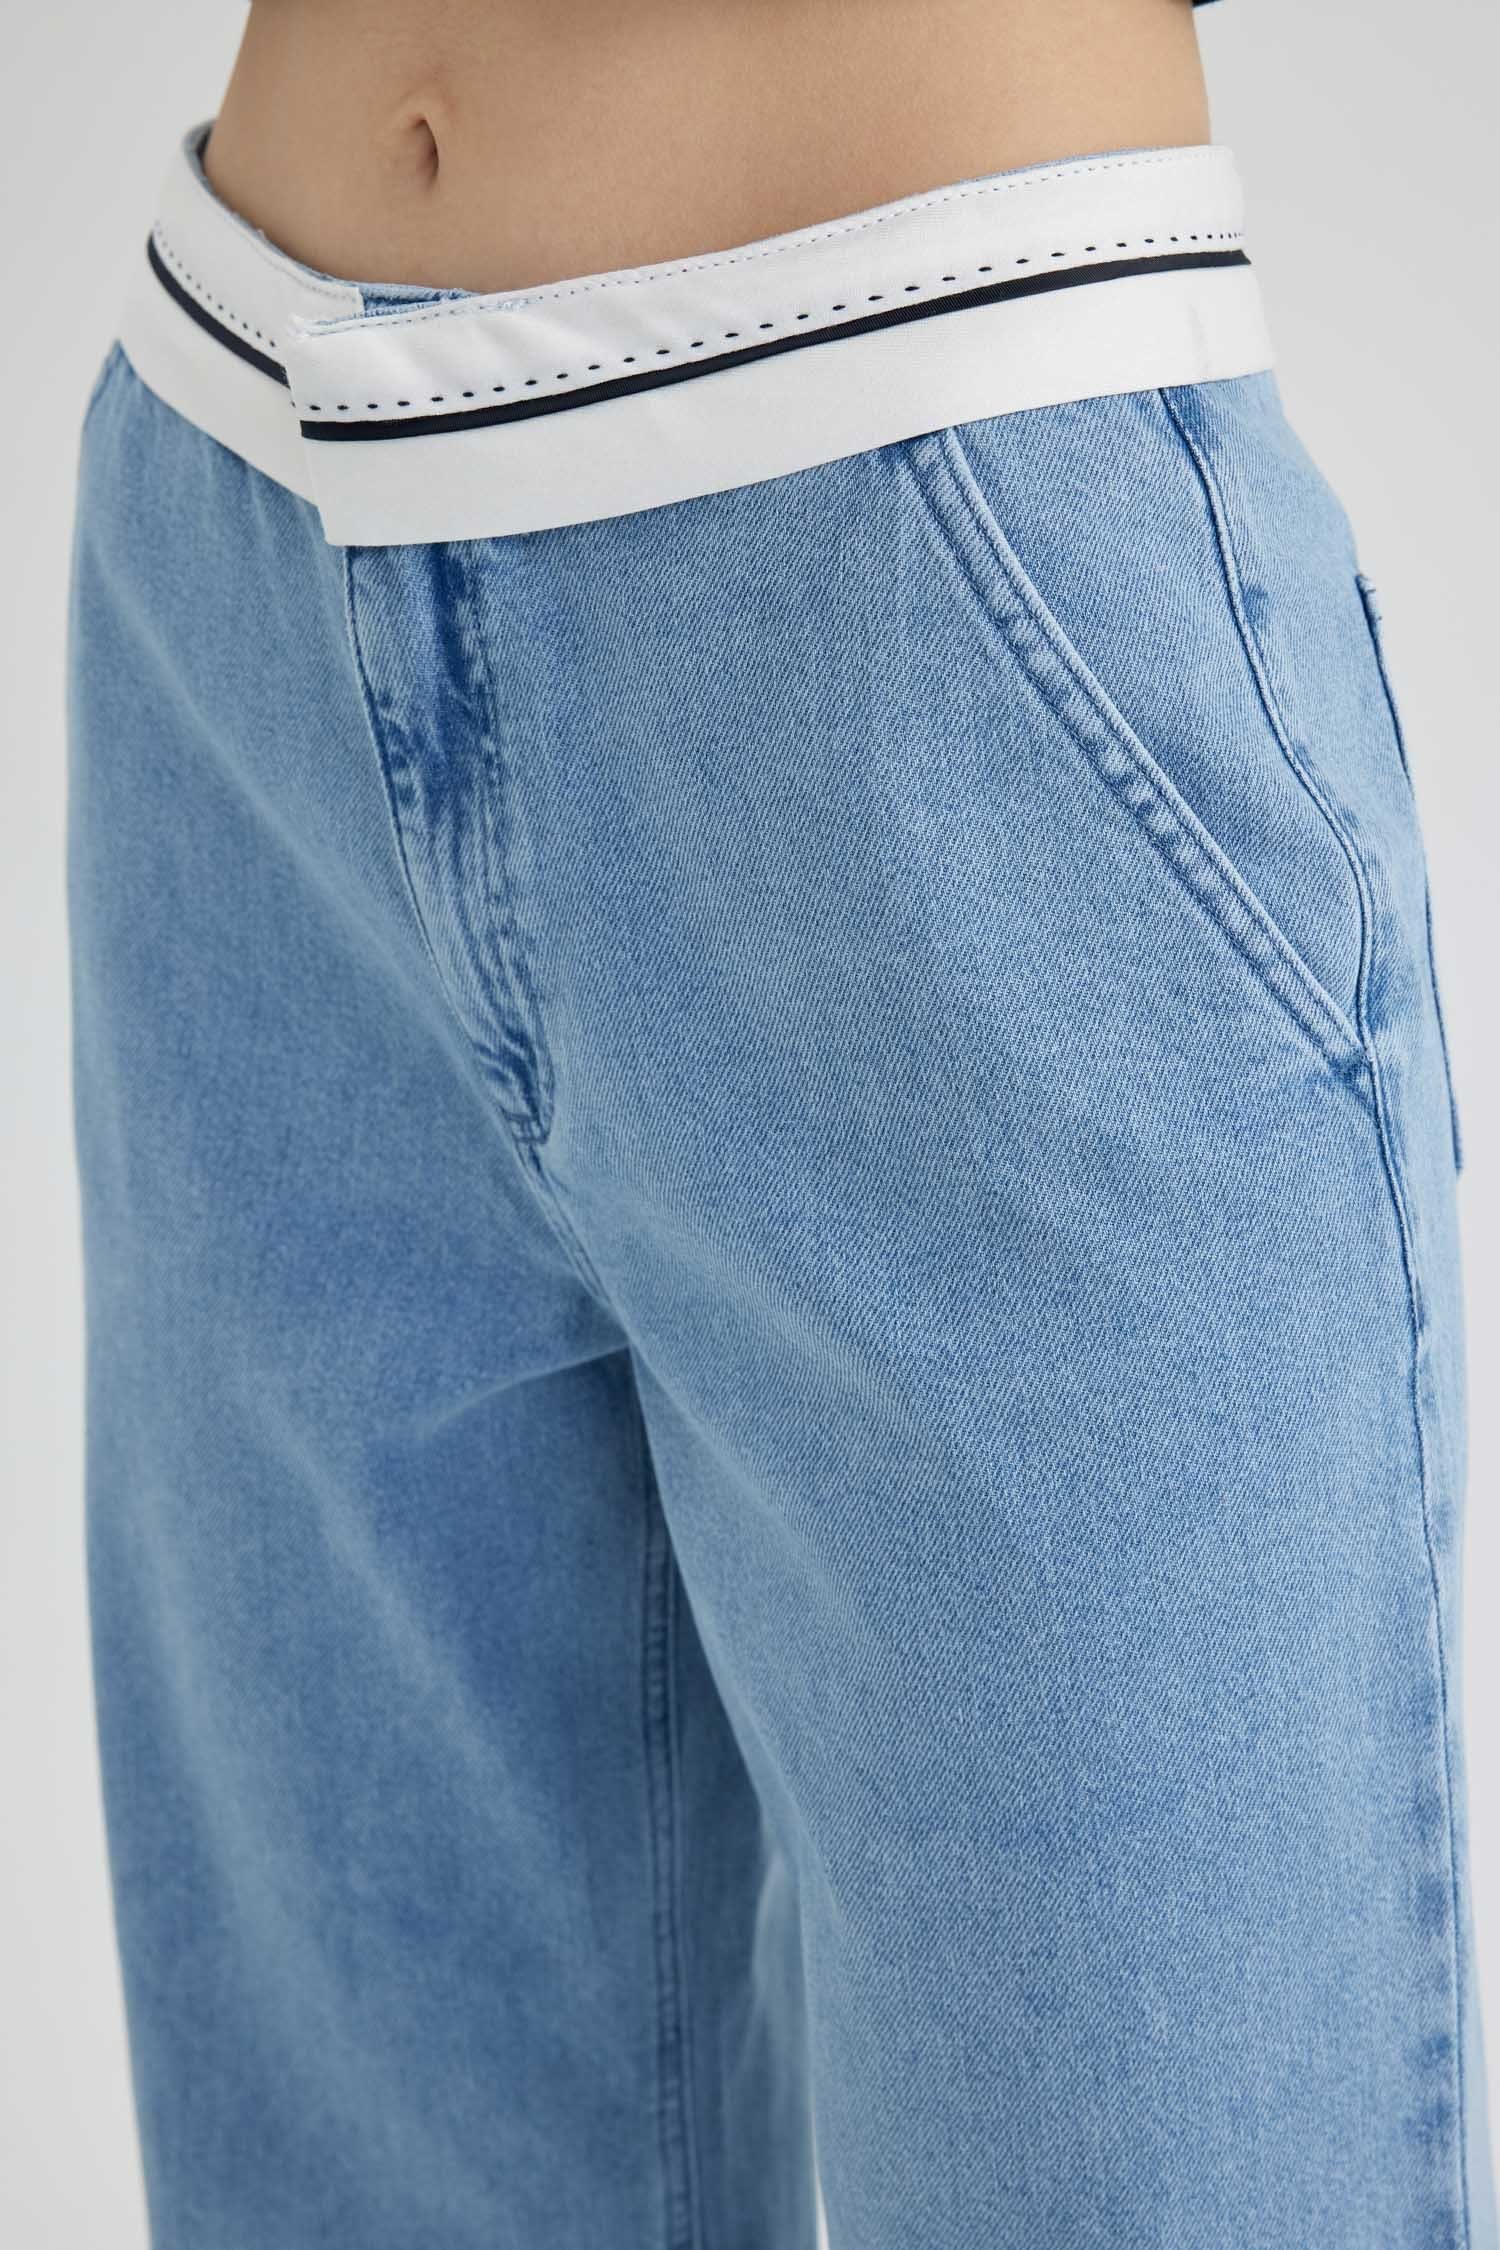 Jeans Jeans WIDE Damen LEG Weite DeFacto Weite